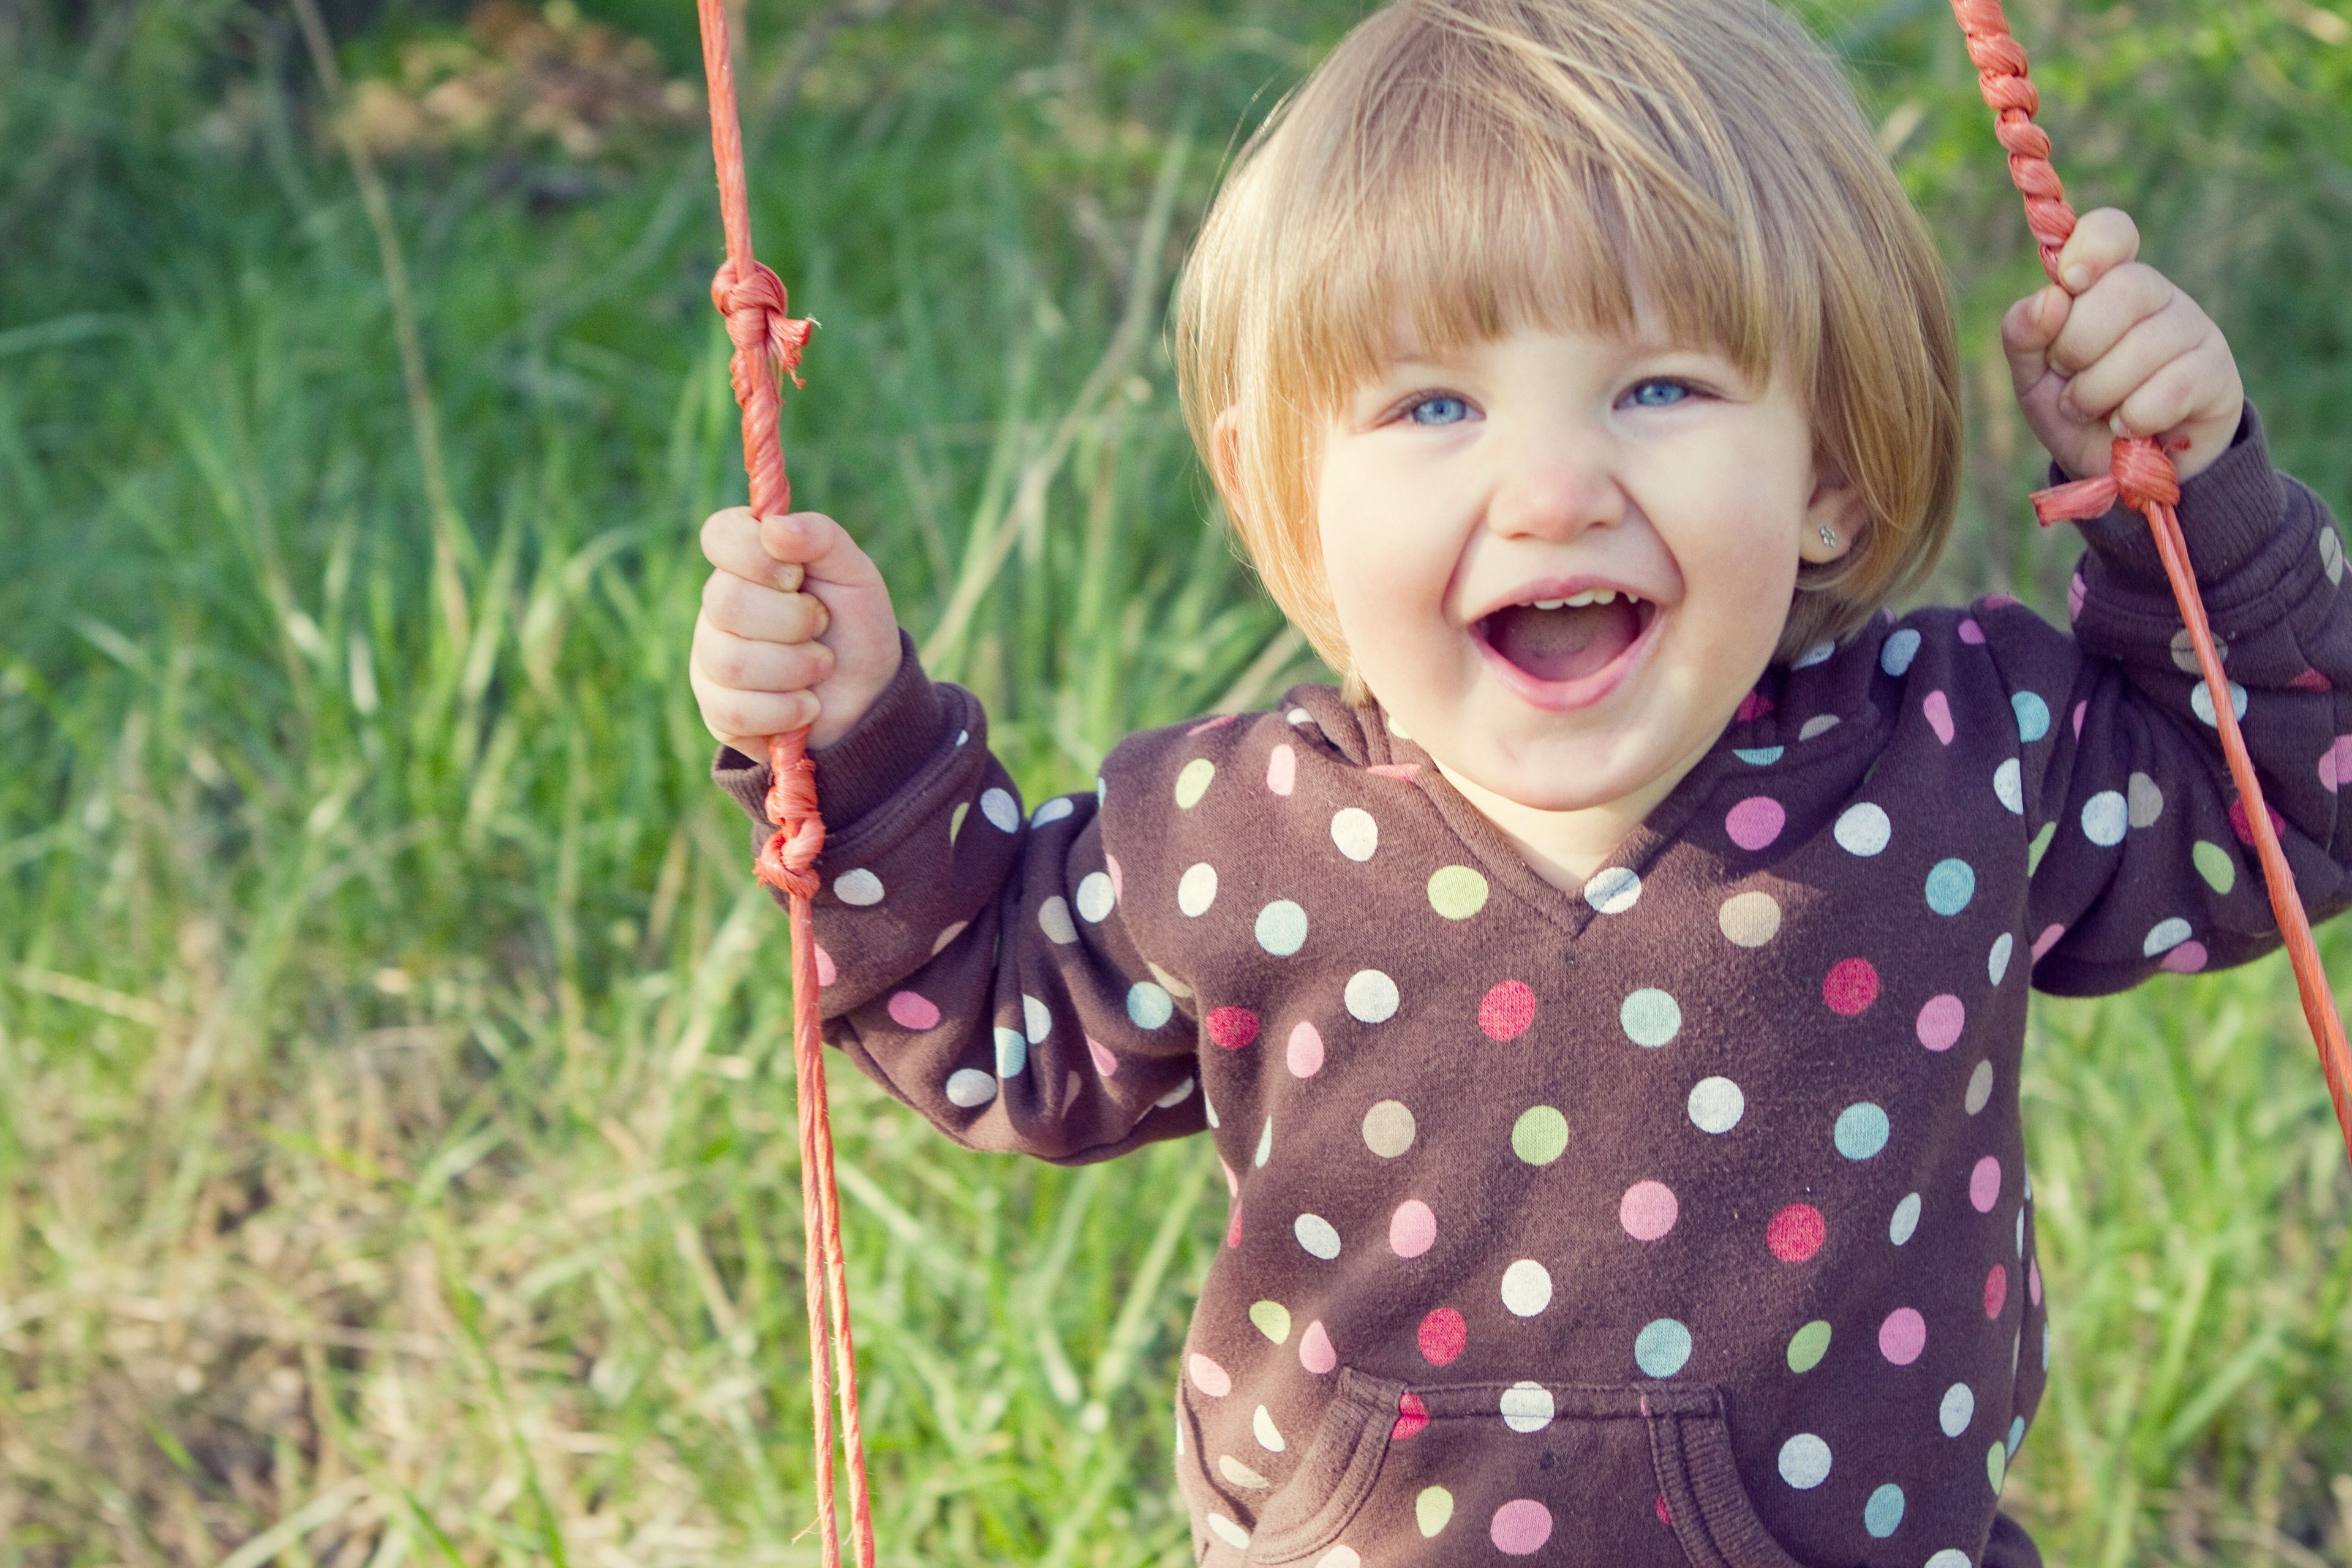 A little girl plays on swings.